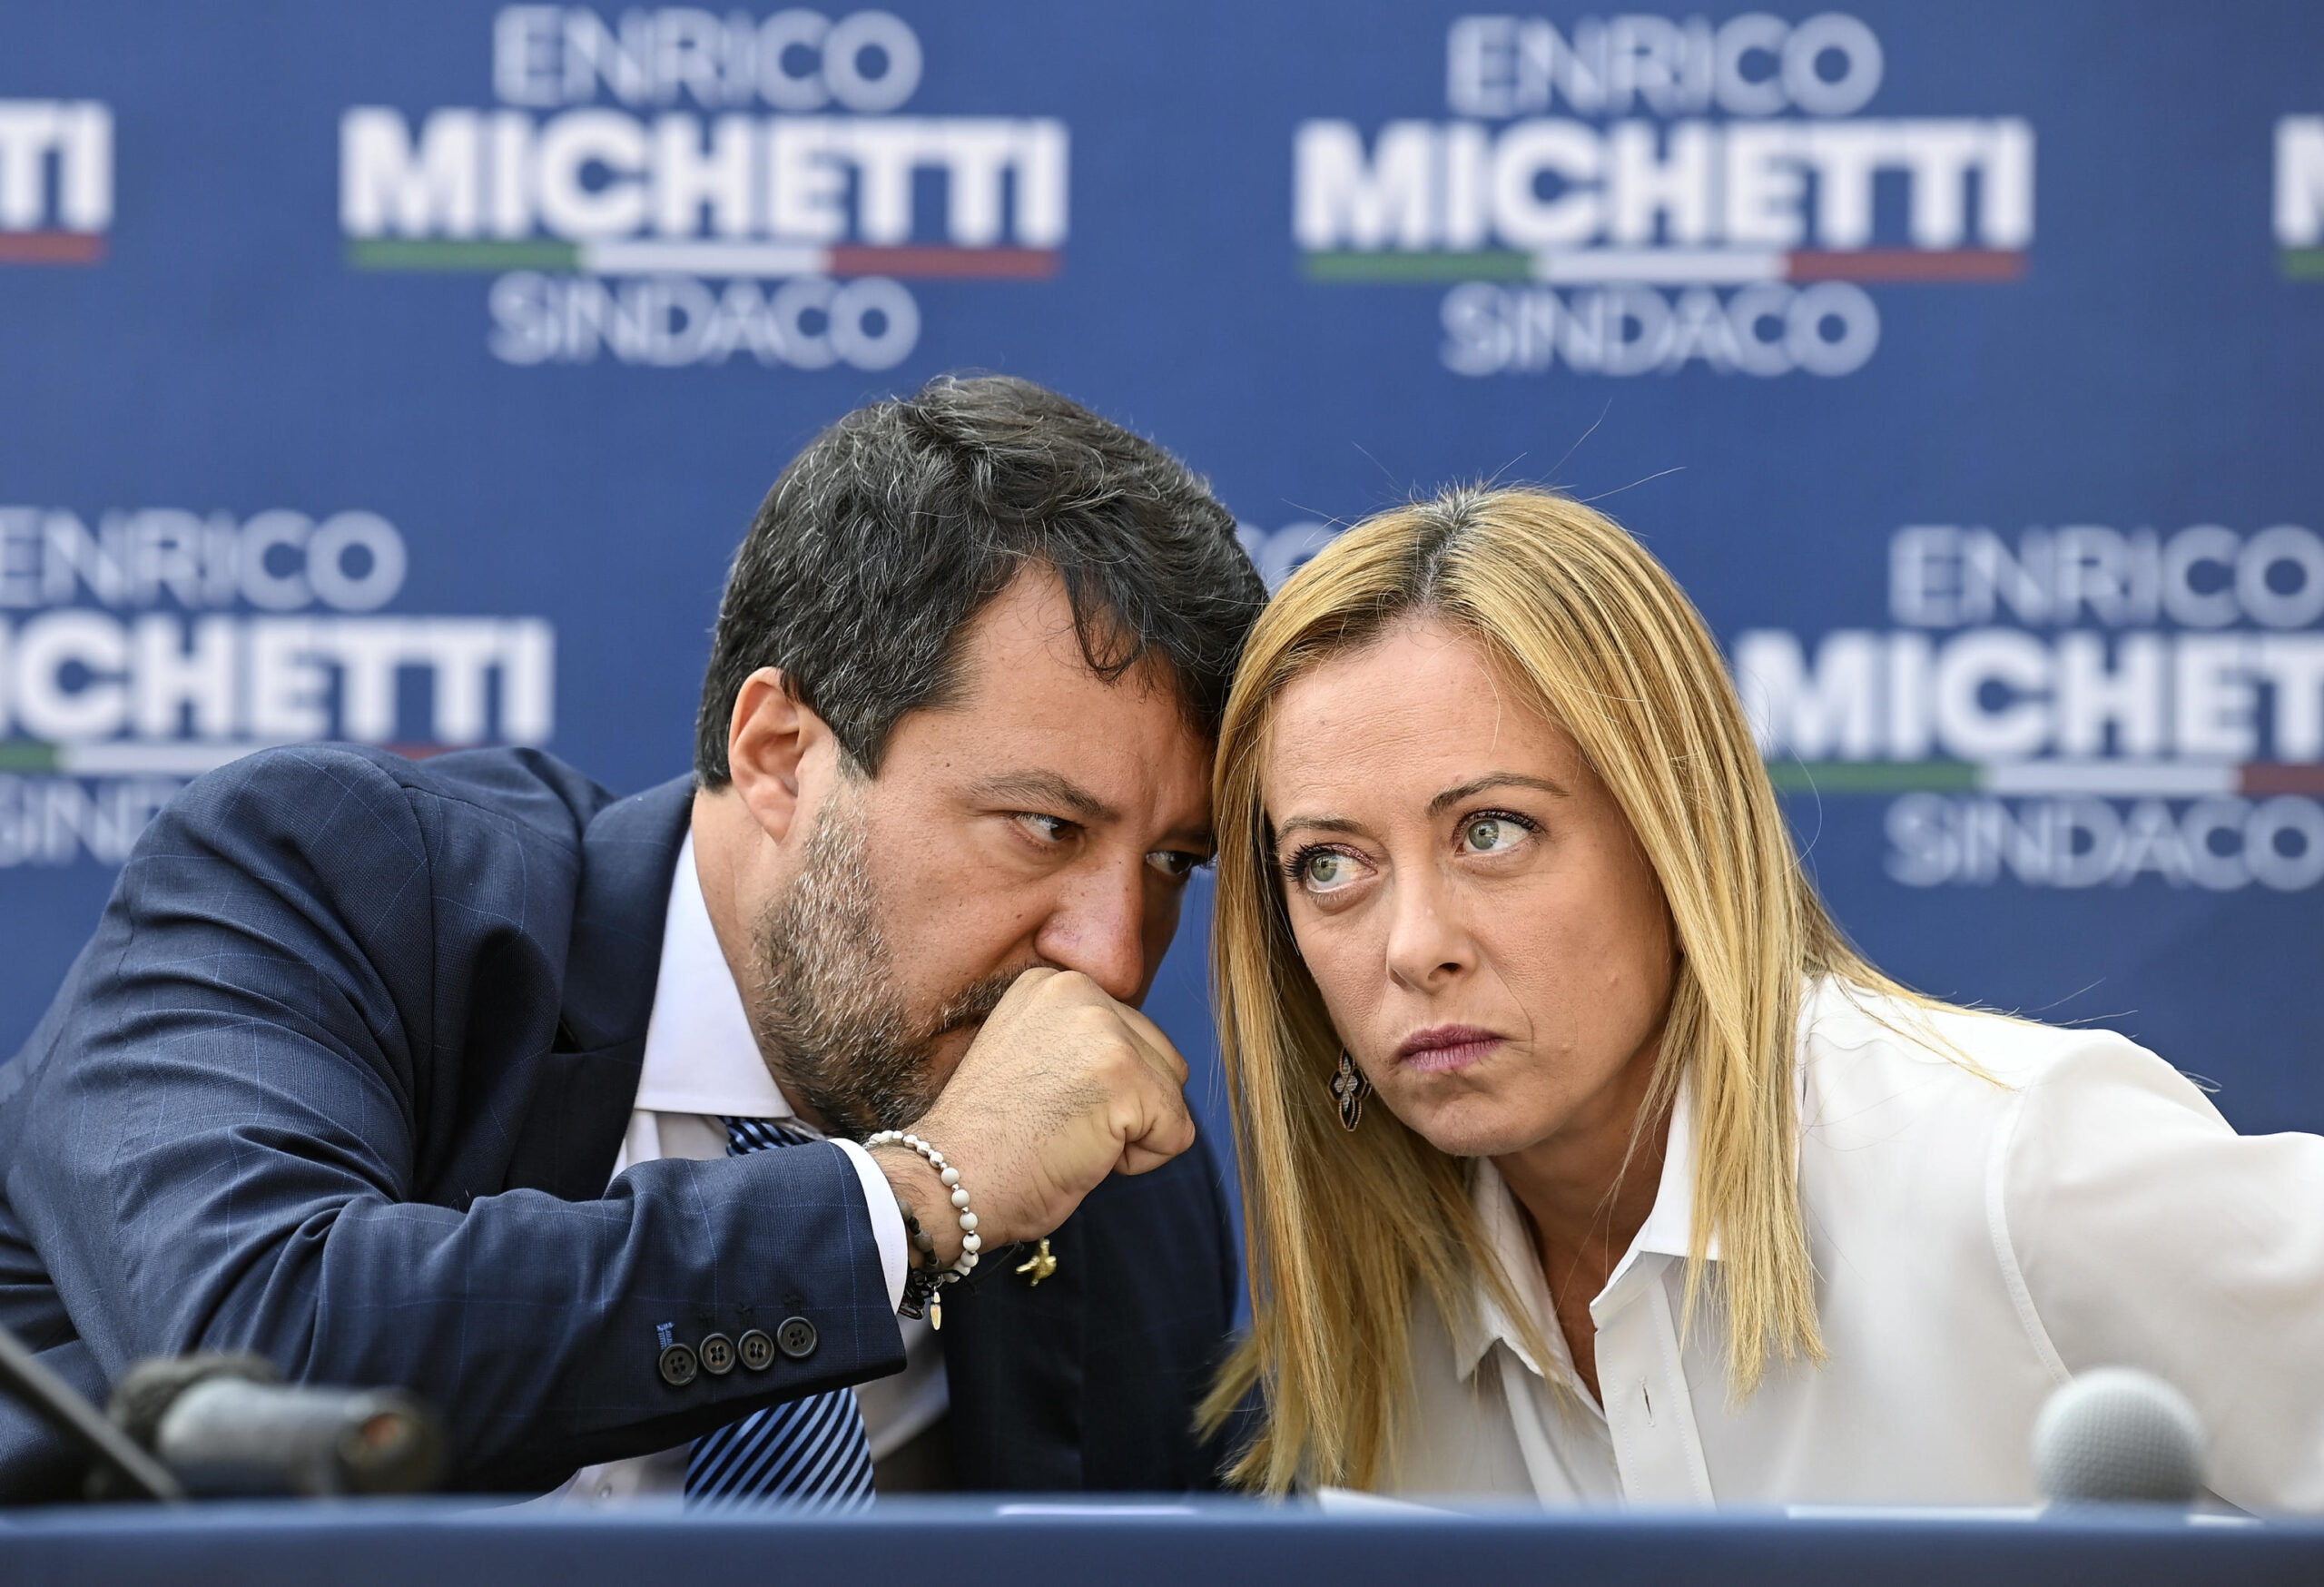 Salvini assicura: "Con Giorgia Meloni al governo non litigheremo". E su Putin aggiunge...